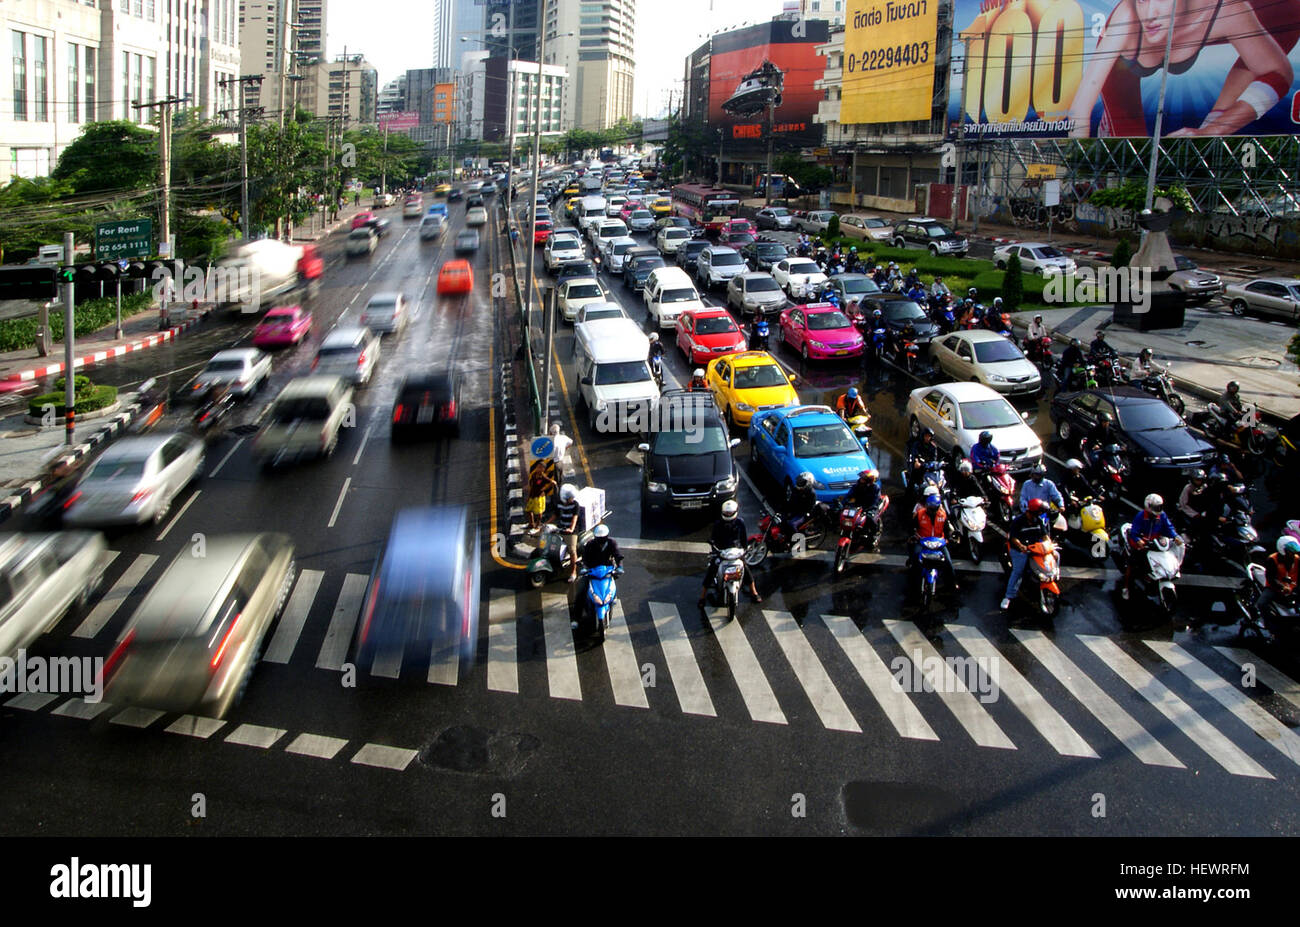 Il y a plus de 7,5 millions de véhicules sur les routes de Bangkok, près d'un pour chaque résident d'une ville de 9 millions de personnes. Il est souvent appelé "heure de pointe", seulement il dure presque toute la journée. Camions, tracteurs, autobus, motocyclettes, berlines, auto rickshaws pour faire de Bangkok depuis longtemps un poster-enfant pour les embouteillages urbains. La ville de 11 millions de dollars est le moteur lui-même à l'arrêt que cette congestion devrait empirer en 2013 Banque D'Images